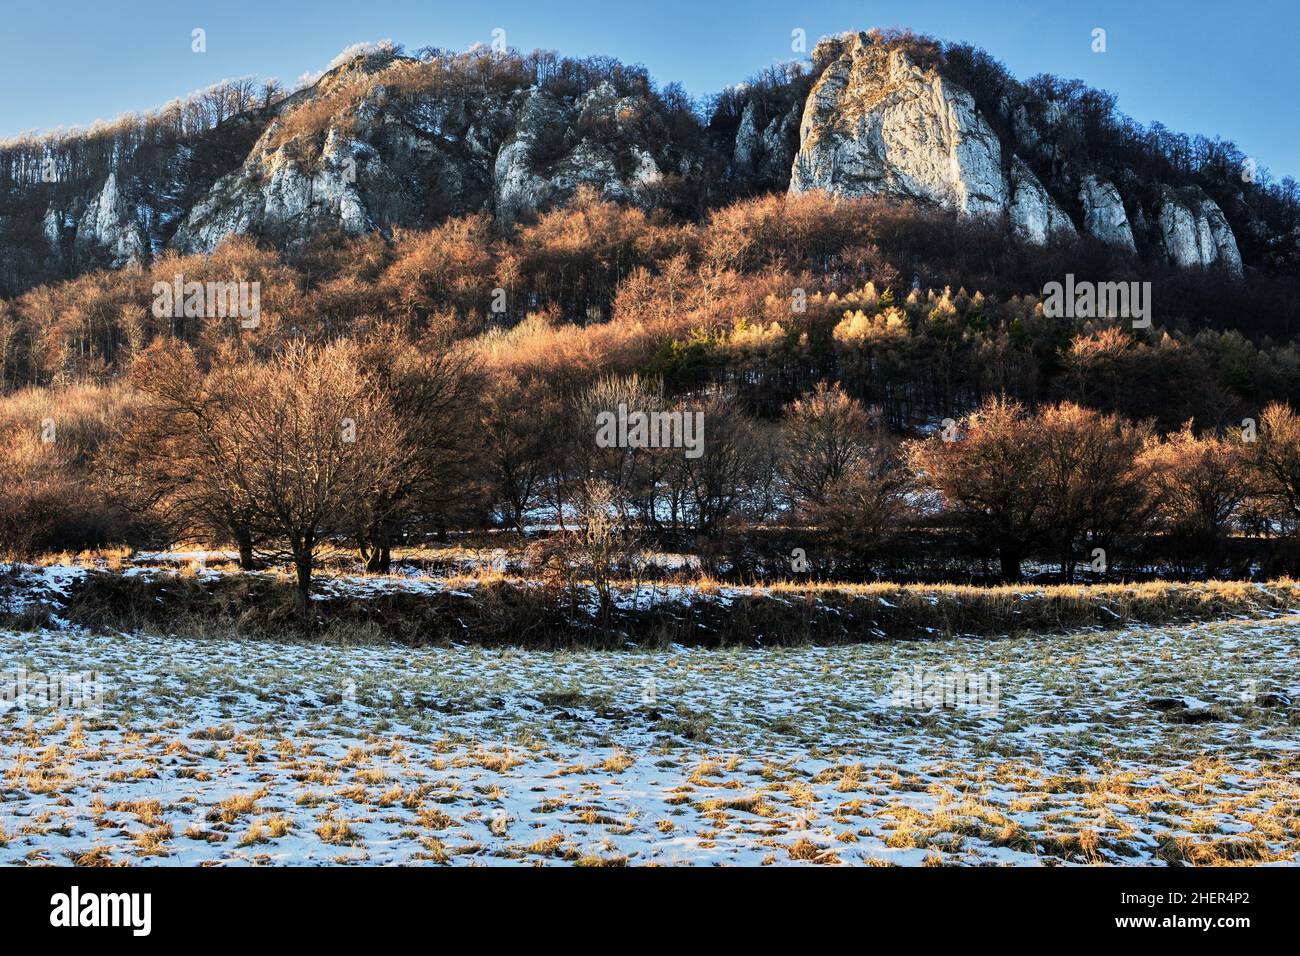 Berglandschaft im Winter bei Sonnenuntergang. Die untergehende Sonne beleuchtet die Bäume und Felsen. Seitenleuchte. Schutzgebiet Vrsatec, Slowakei. Stockfoto